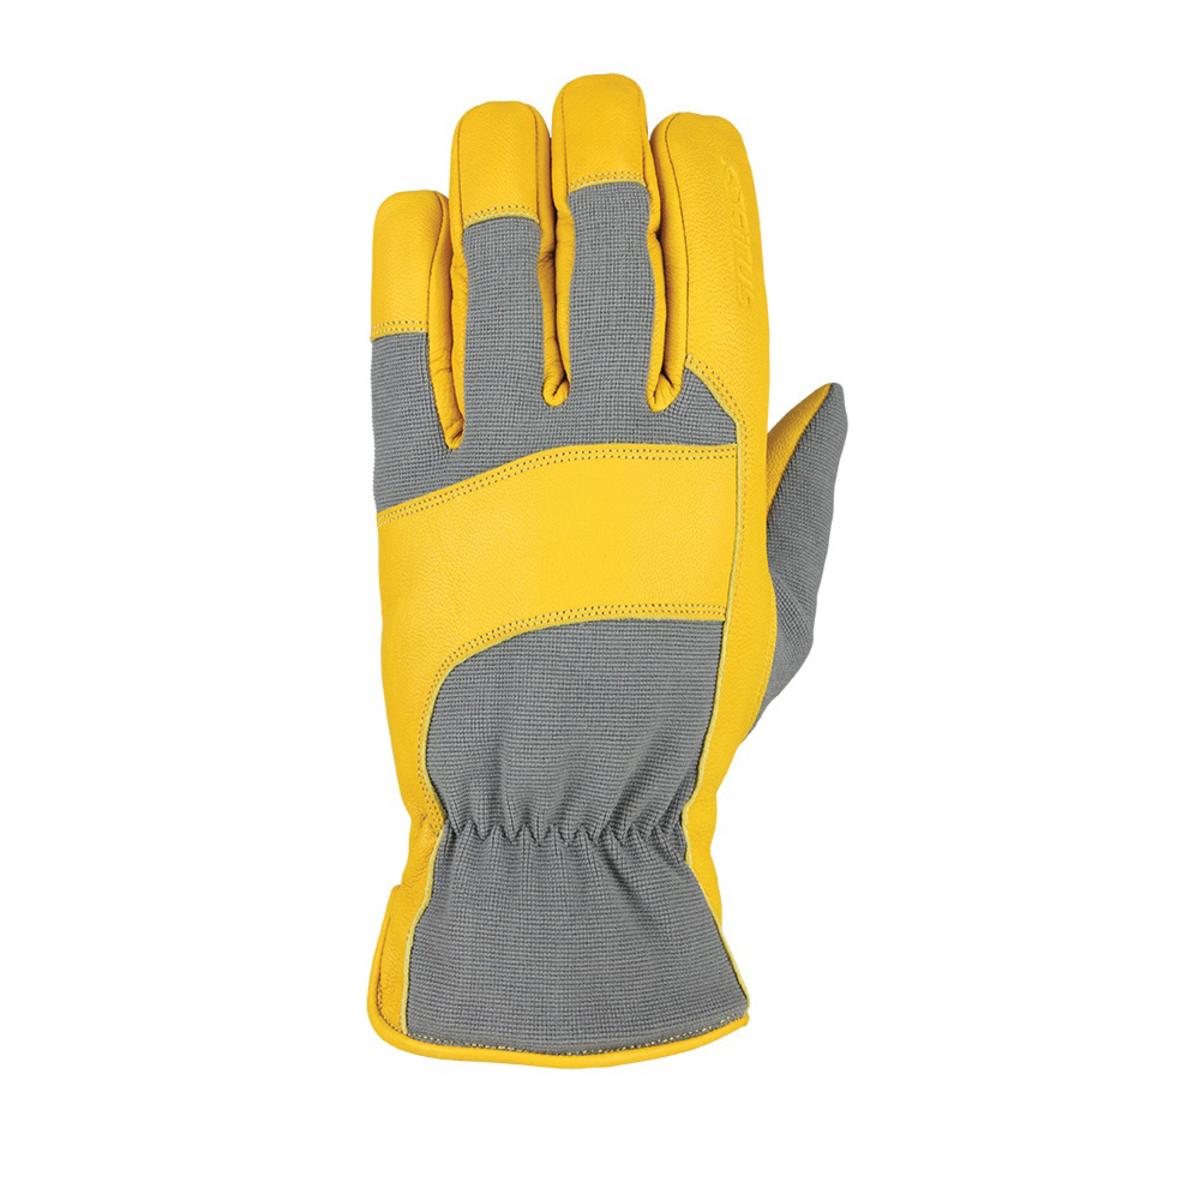 Seirus HWS Heatwave Workman Leather Gloves